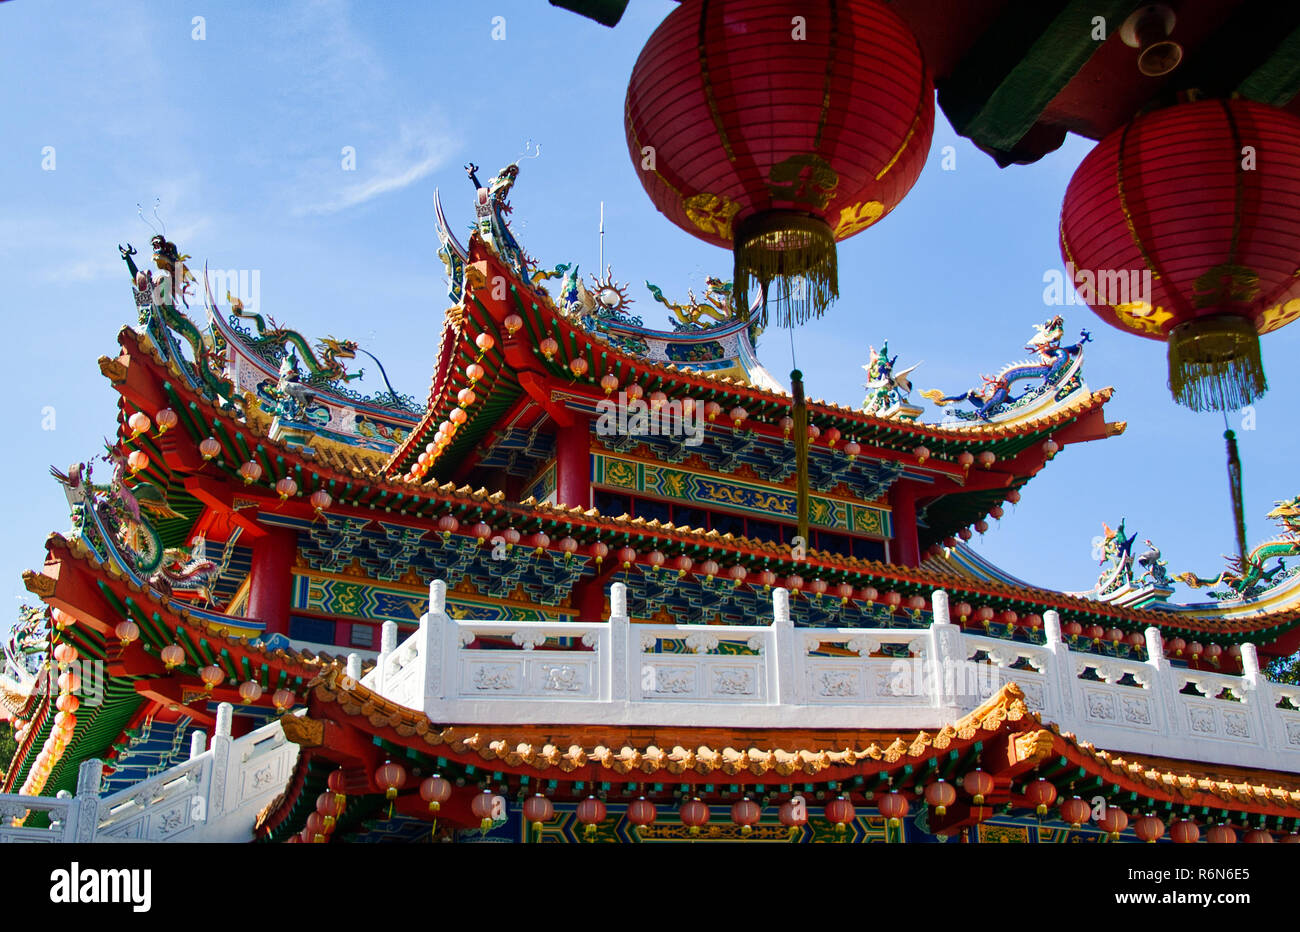 Dettaglio dal tempio cinese di Kuala Lumpur Foto Stock